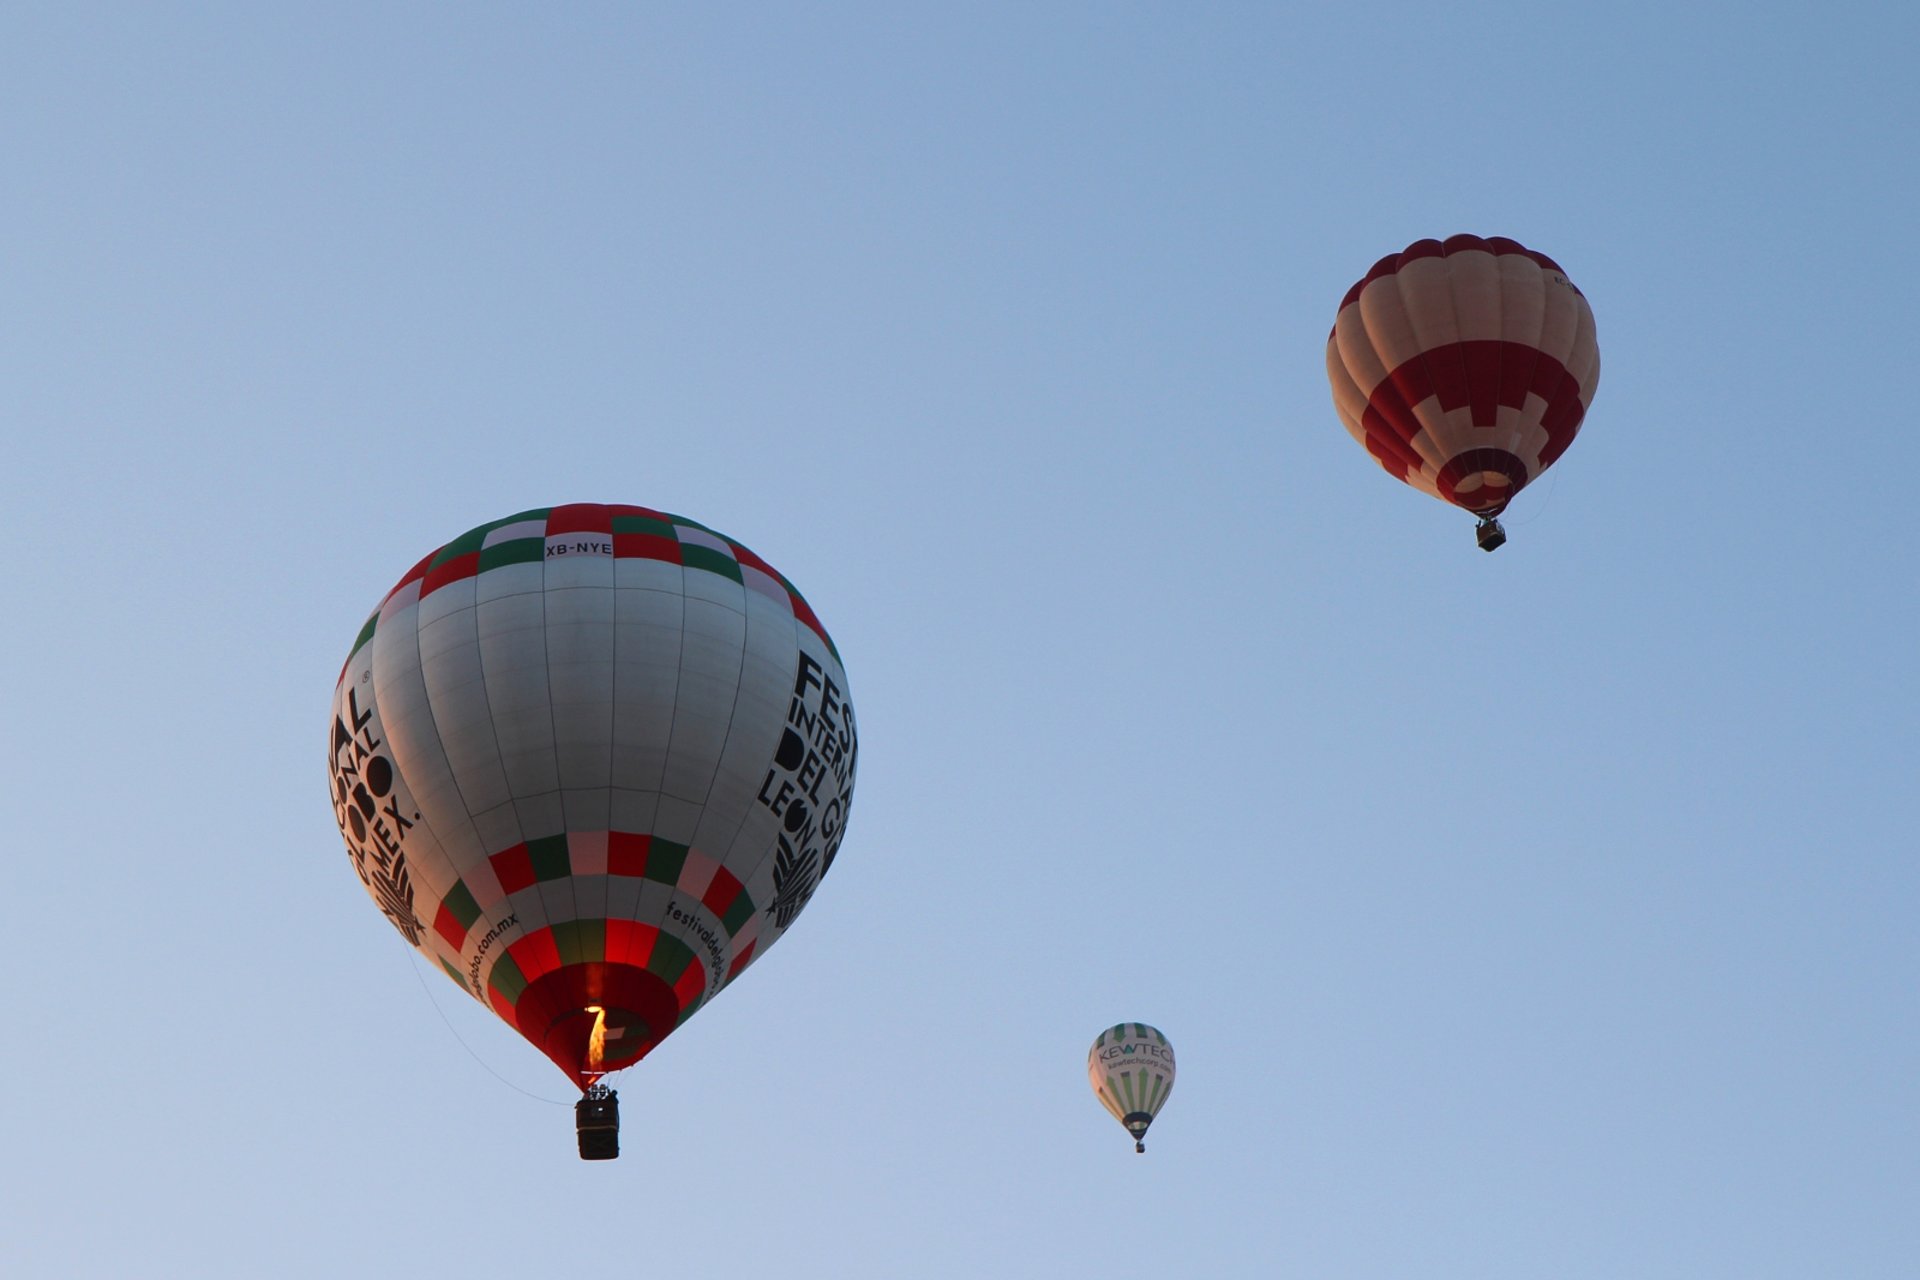 European Hot-Air Balloon Festival